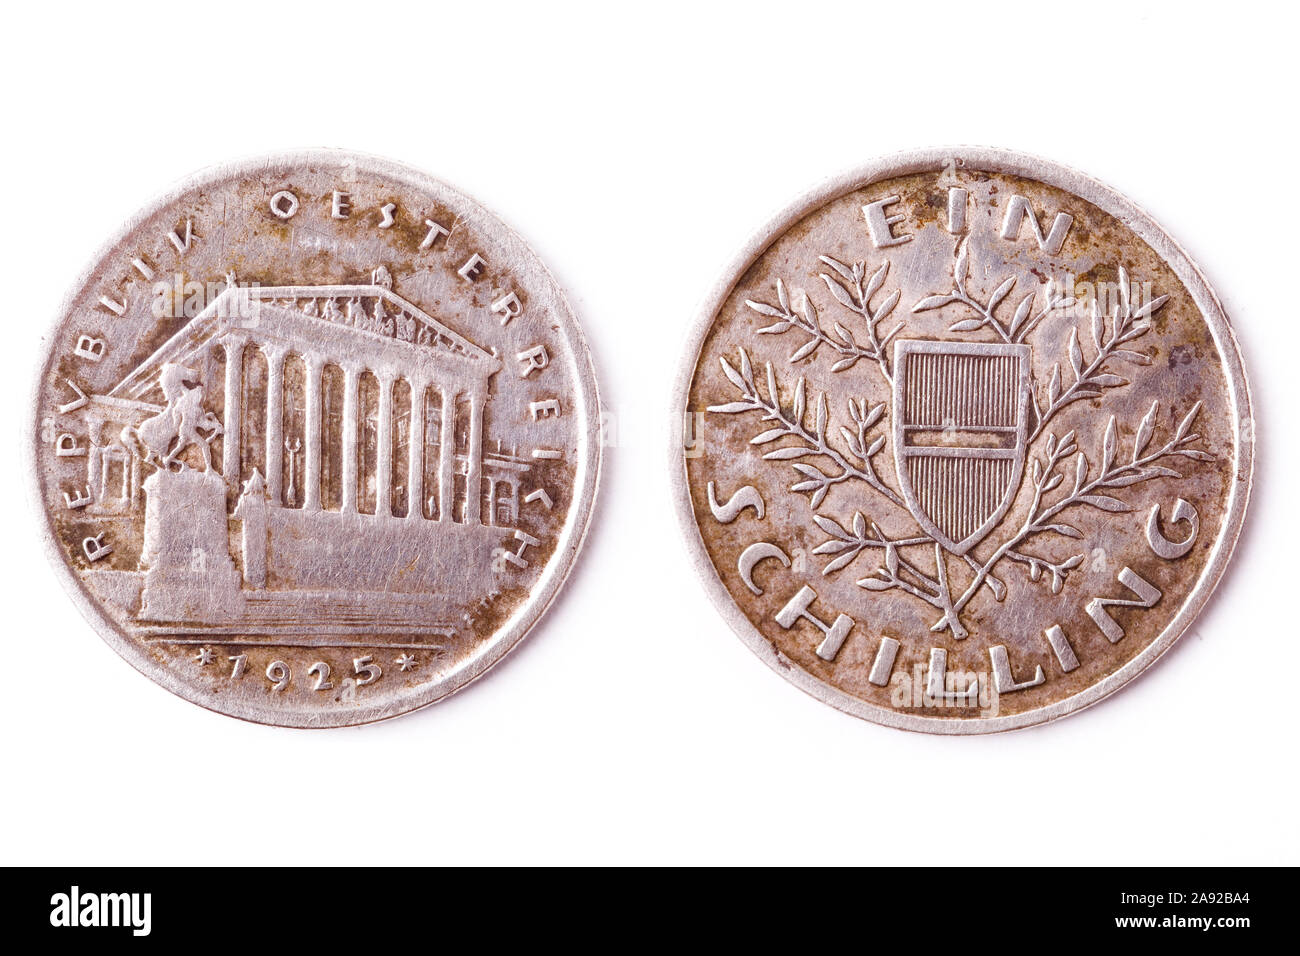 Alte 1 Schilling Münze aus Österreich von 1925 Stock Photo - Alamy